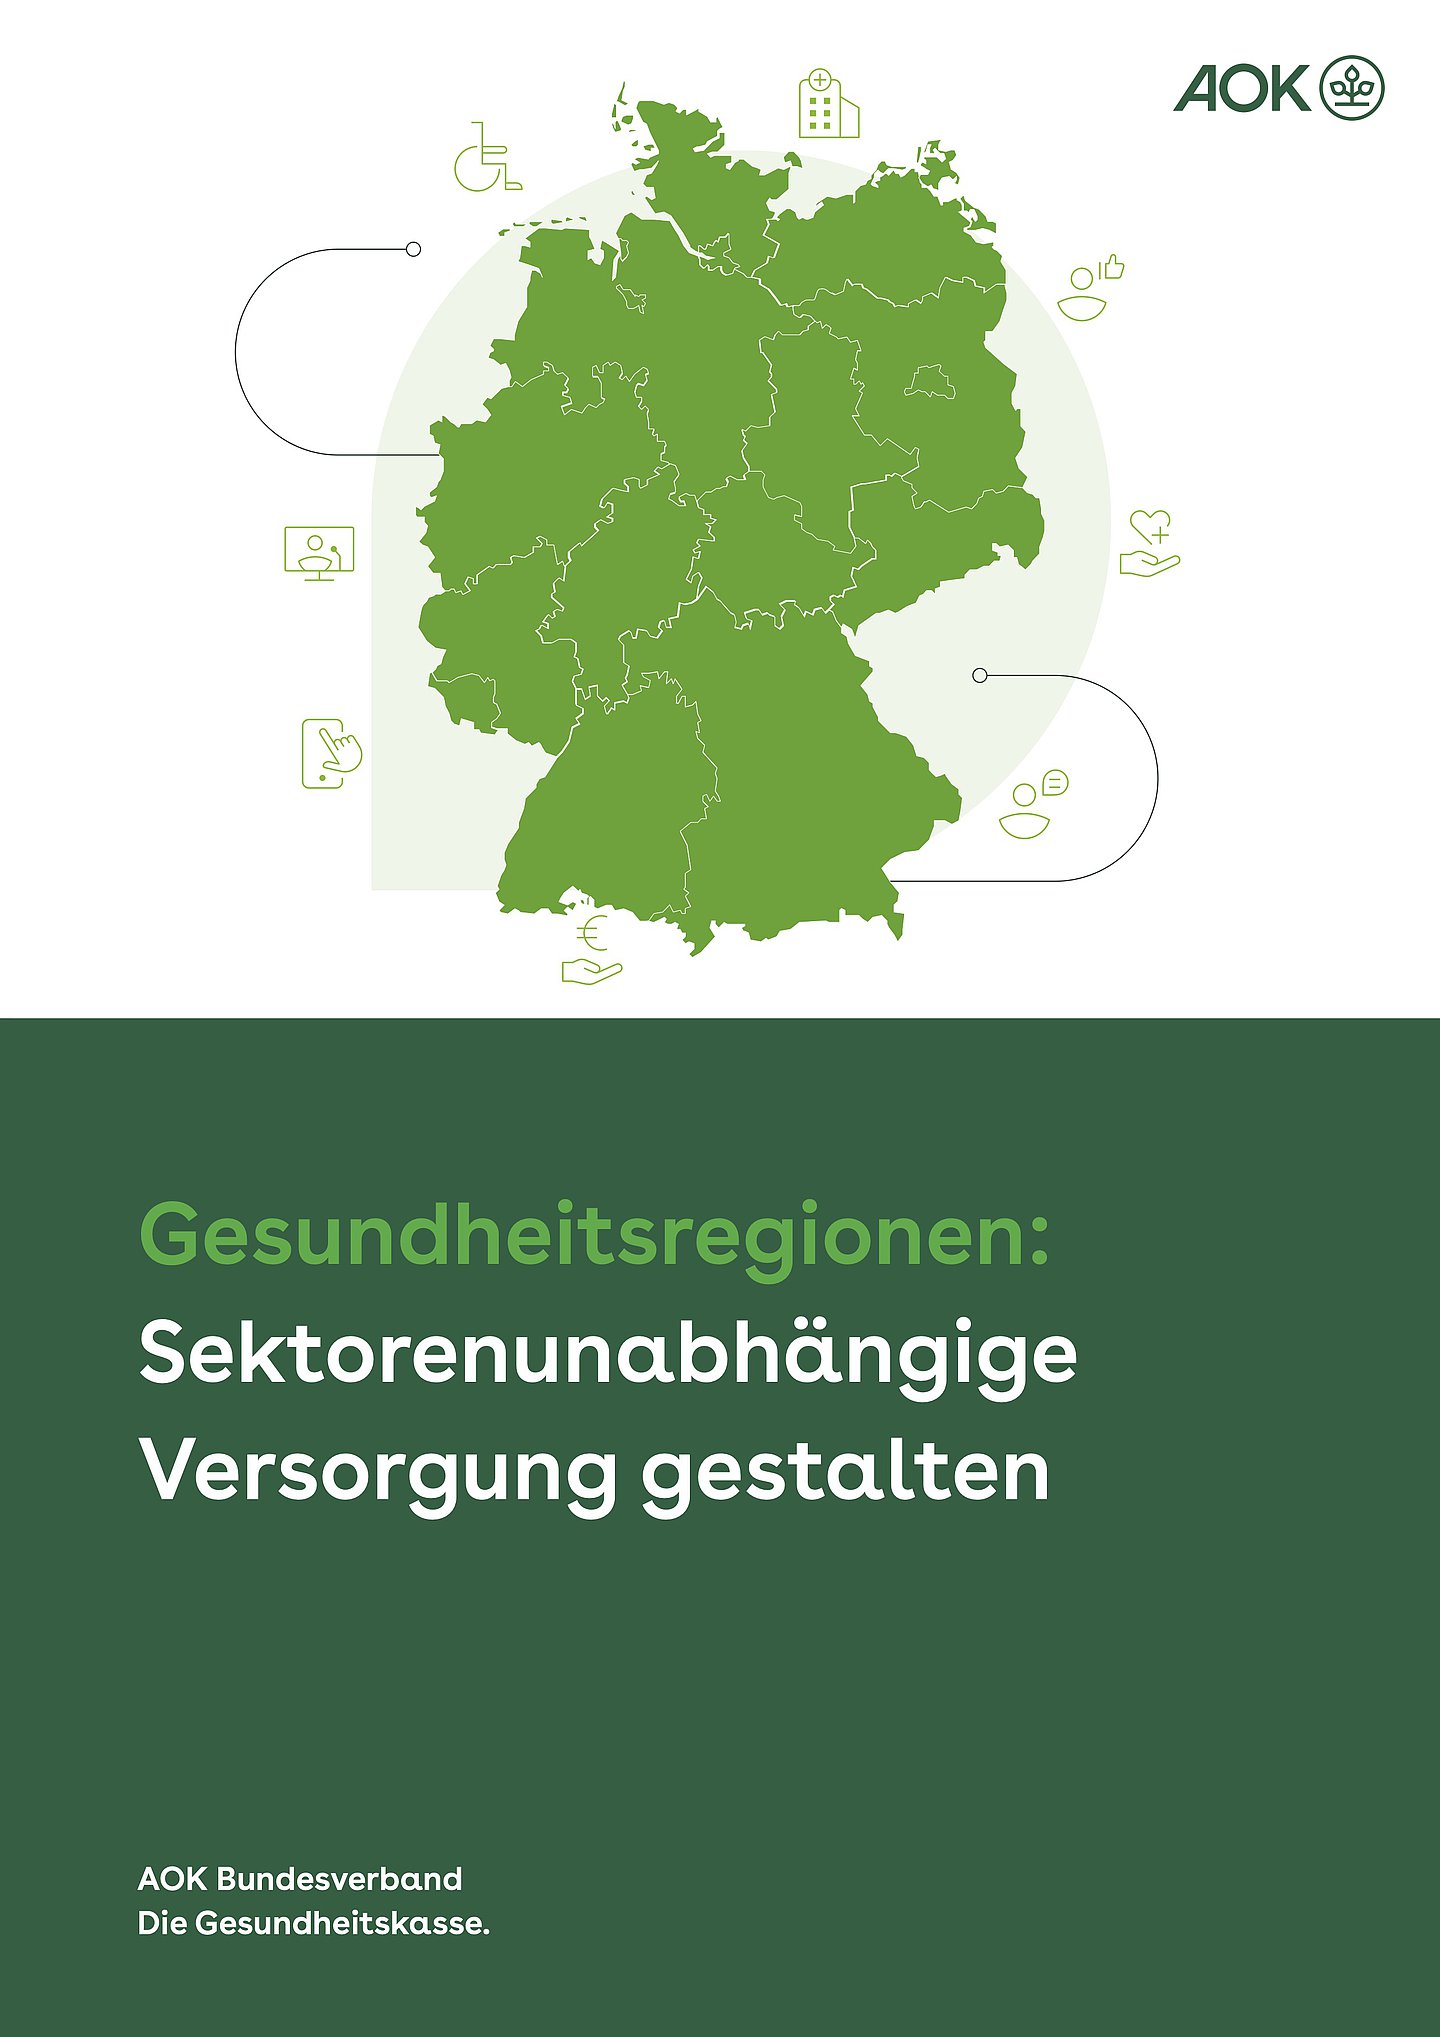 In der oberen Hälfte: Grafische Dartsellung einer Deutschlandkarte in hellgrün und verschiedenen Icons, die Versorgungsthemen illustrieren (Smartphone, Vergütung, Inklusion, Krankenhaus etc.)